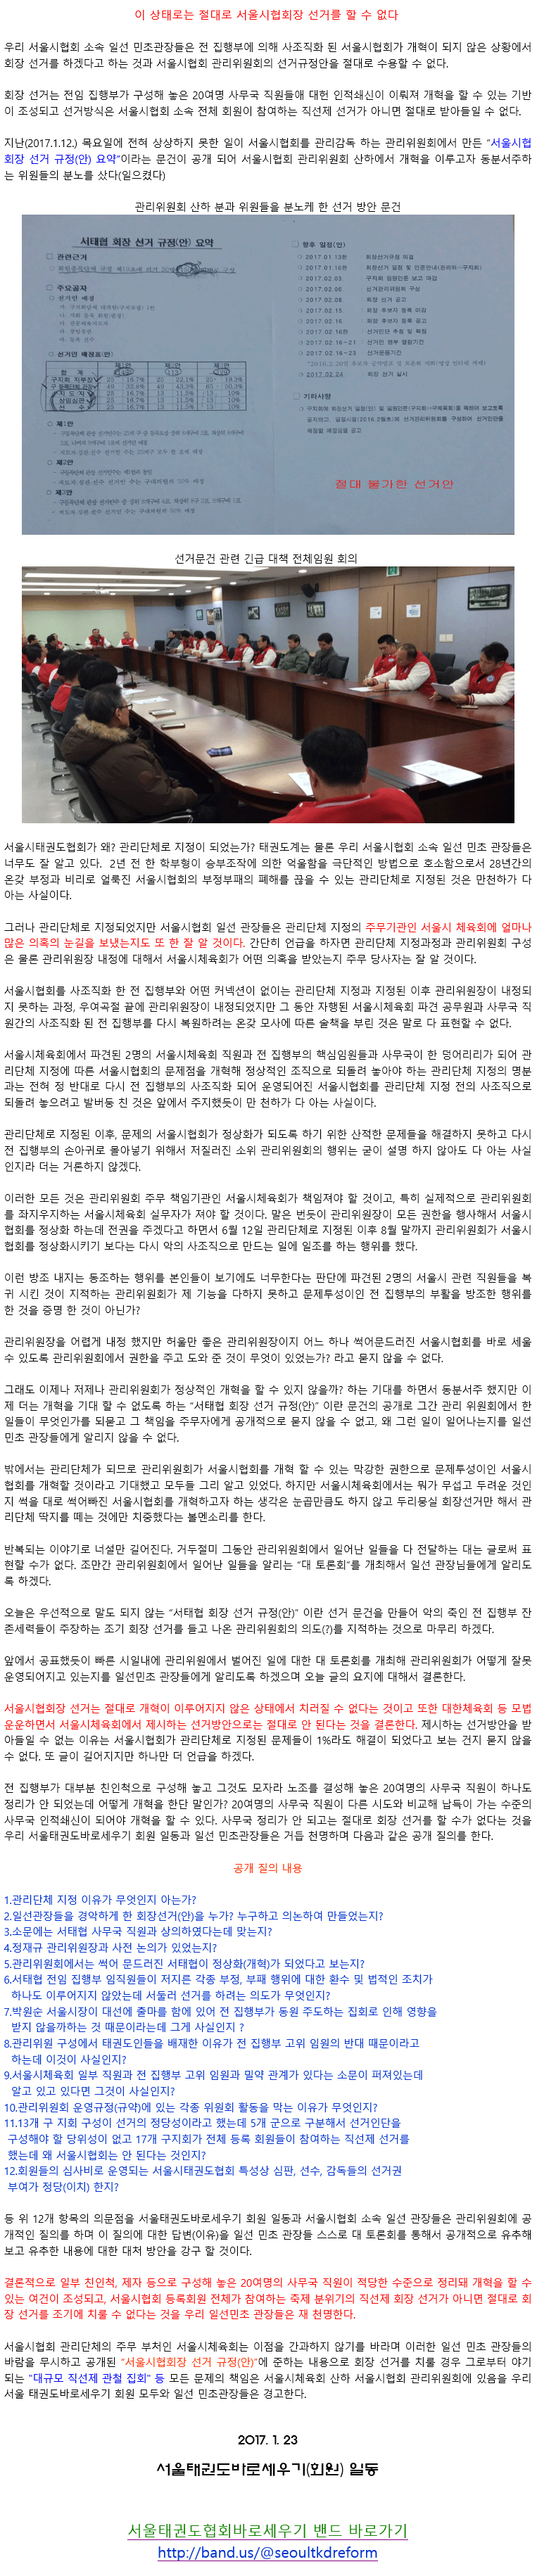 20170121_이상태로는절대로서울시협회장선거를할수없다.gif